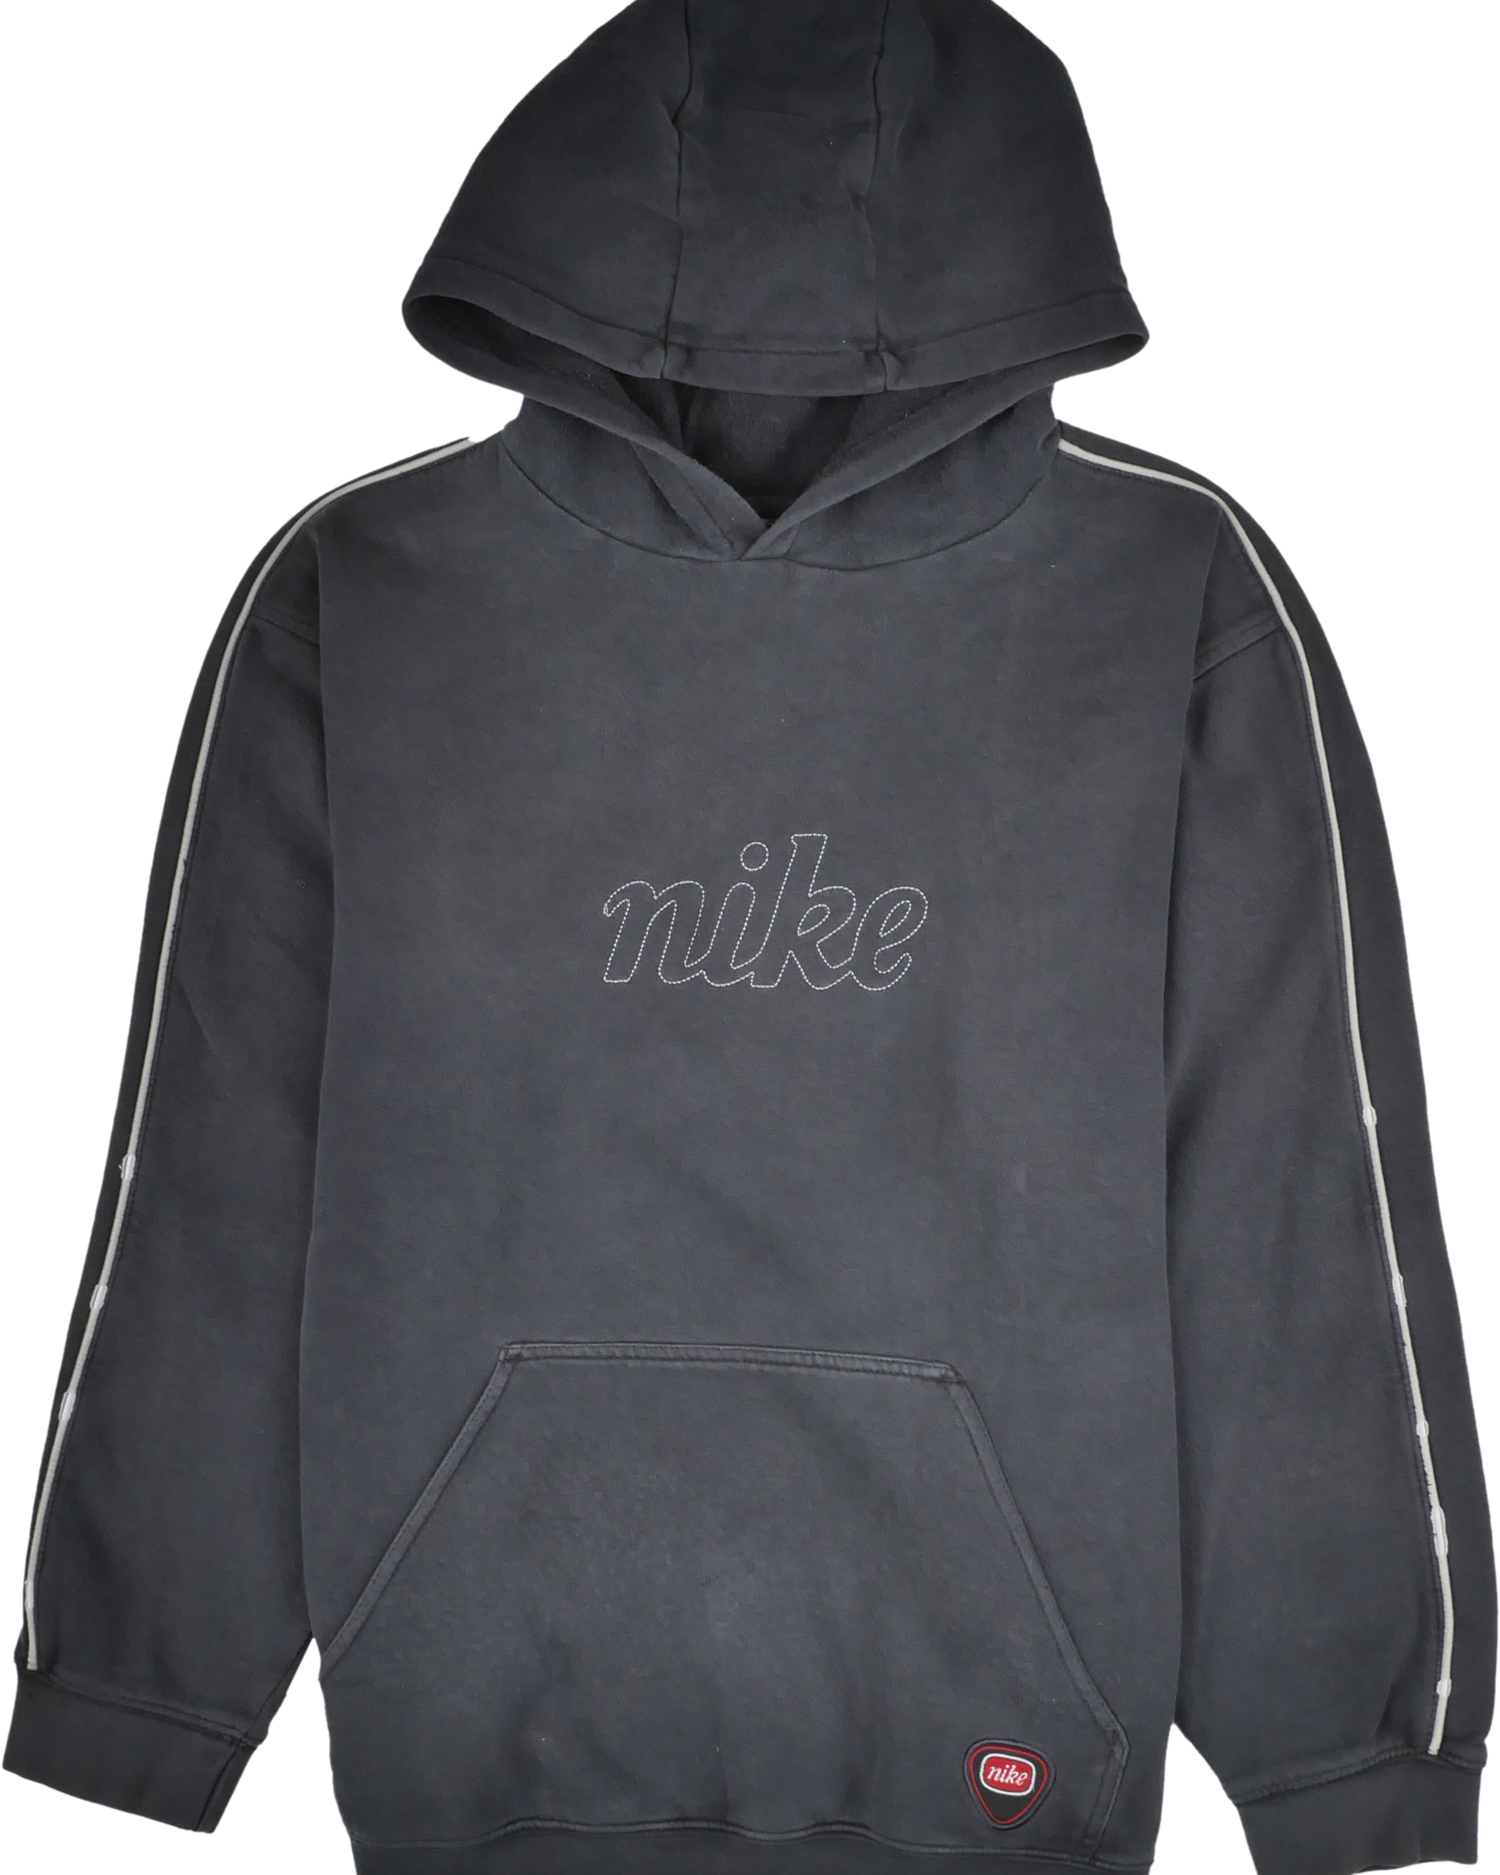 Nike Kapuzen Pullover schwarz